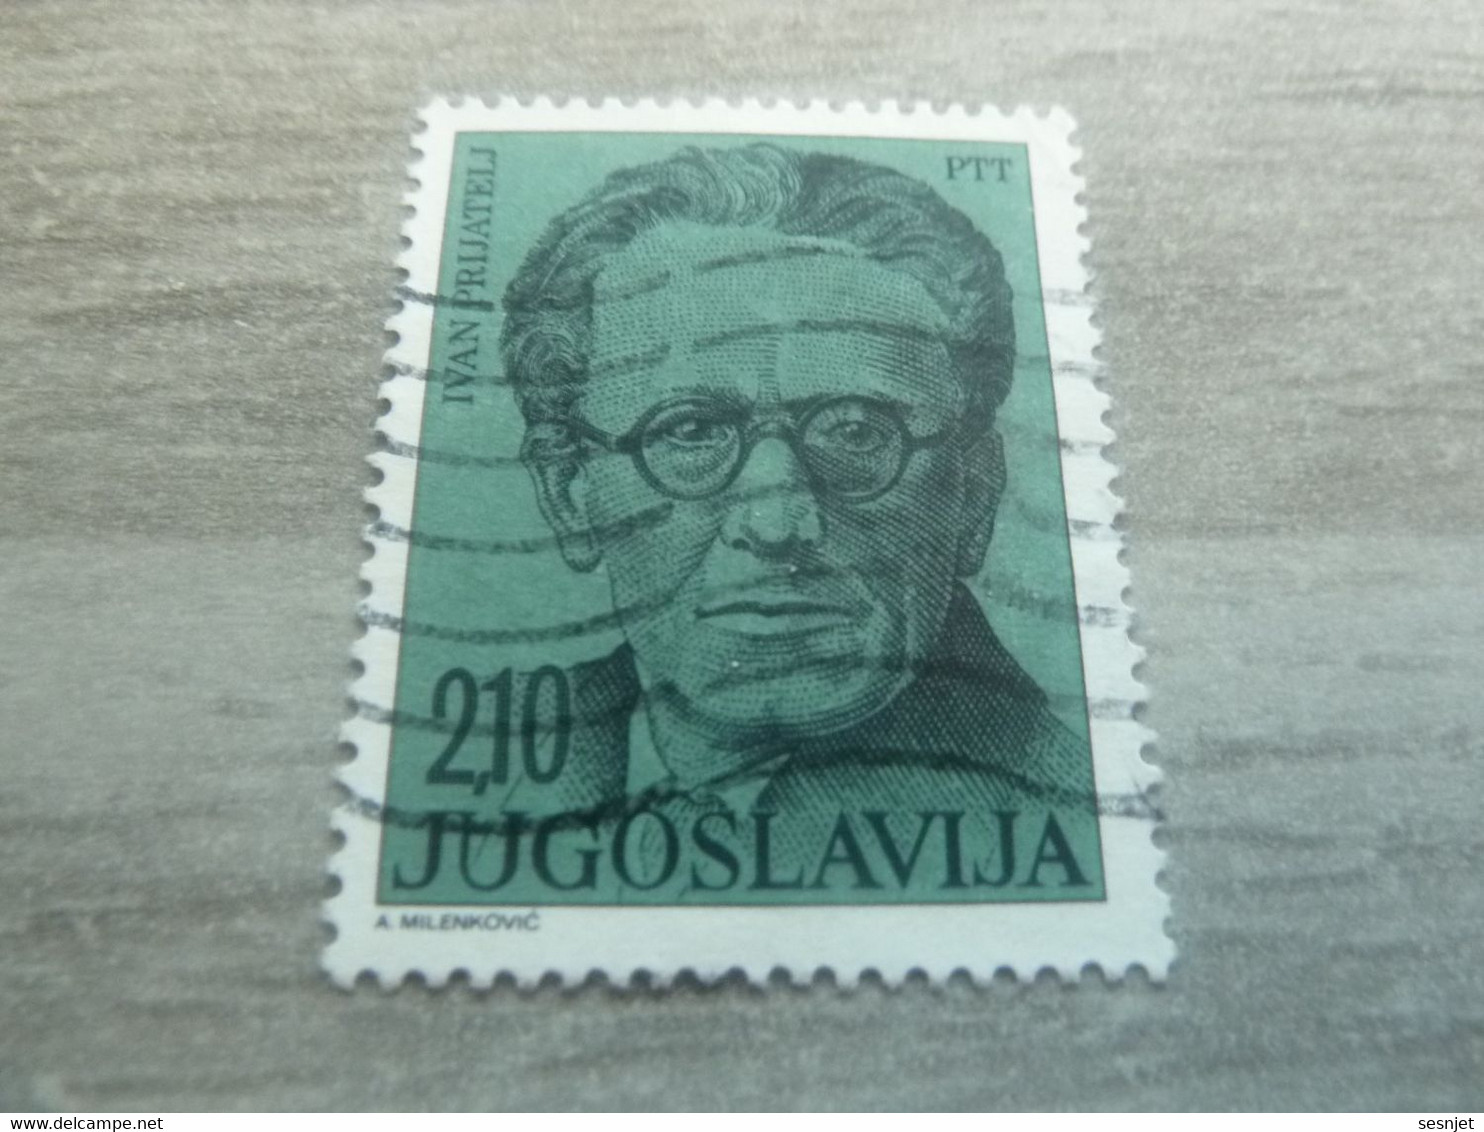 Ptt - Jugoslavija - Ivan Prijatelj - Val 2.10 - Bleu-vert - Oblitéré - - Gebruikt